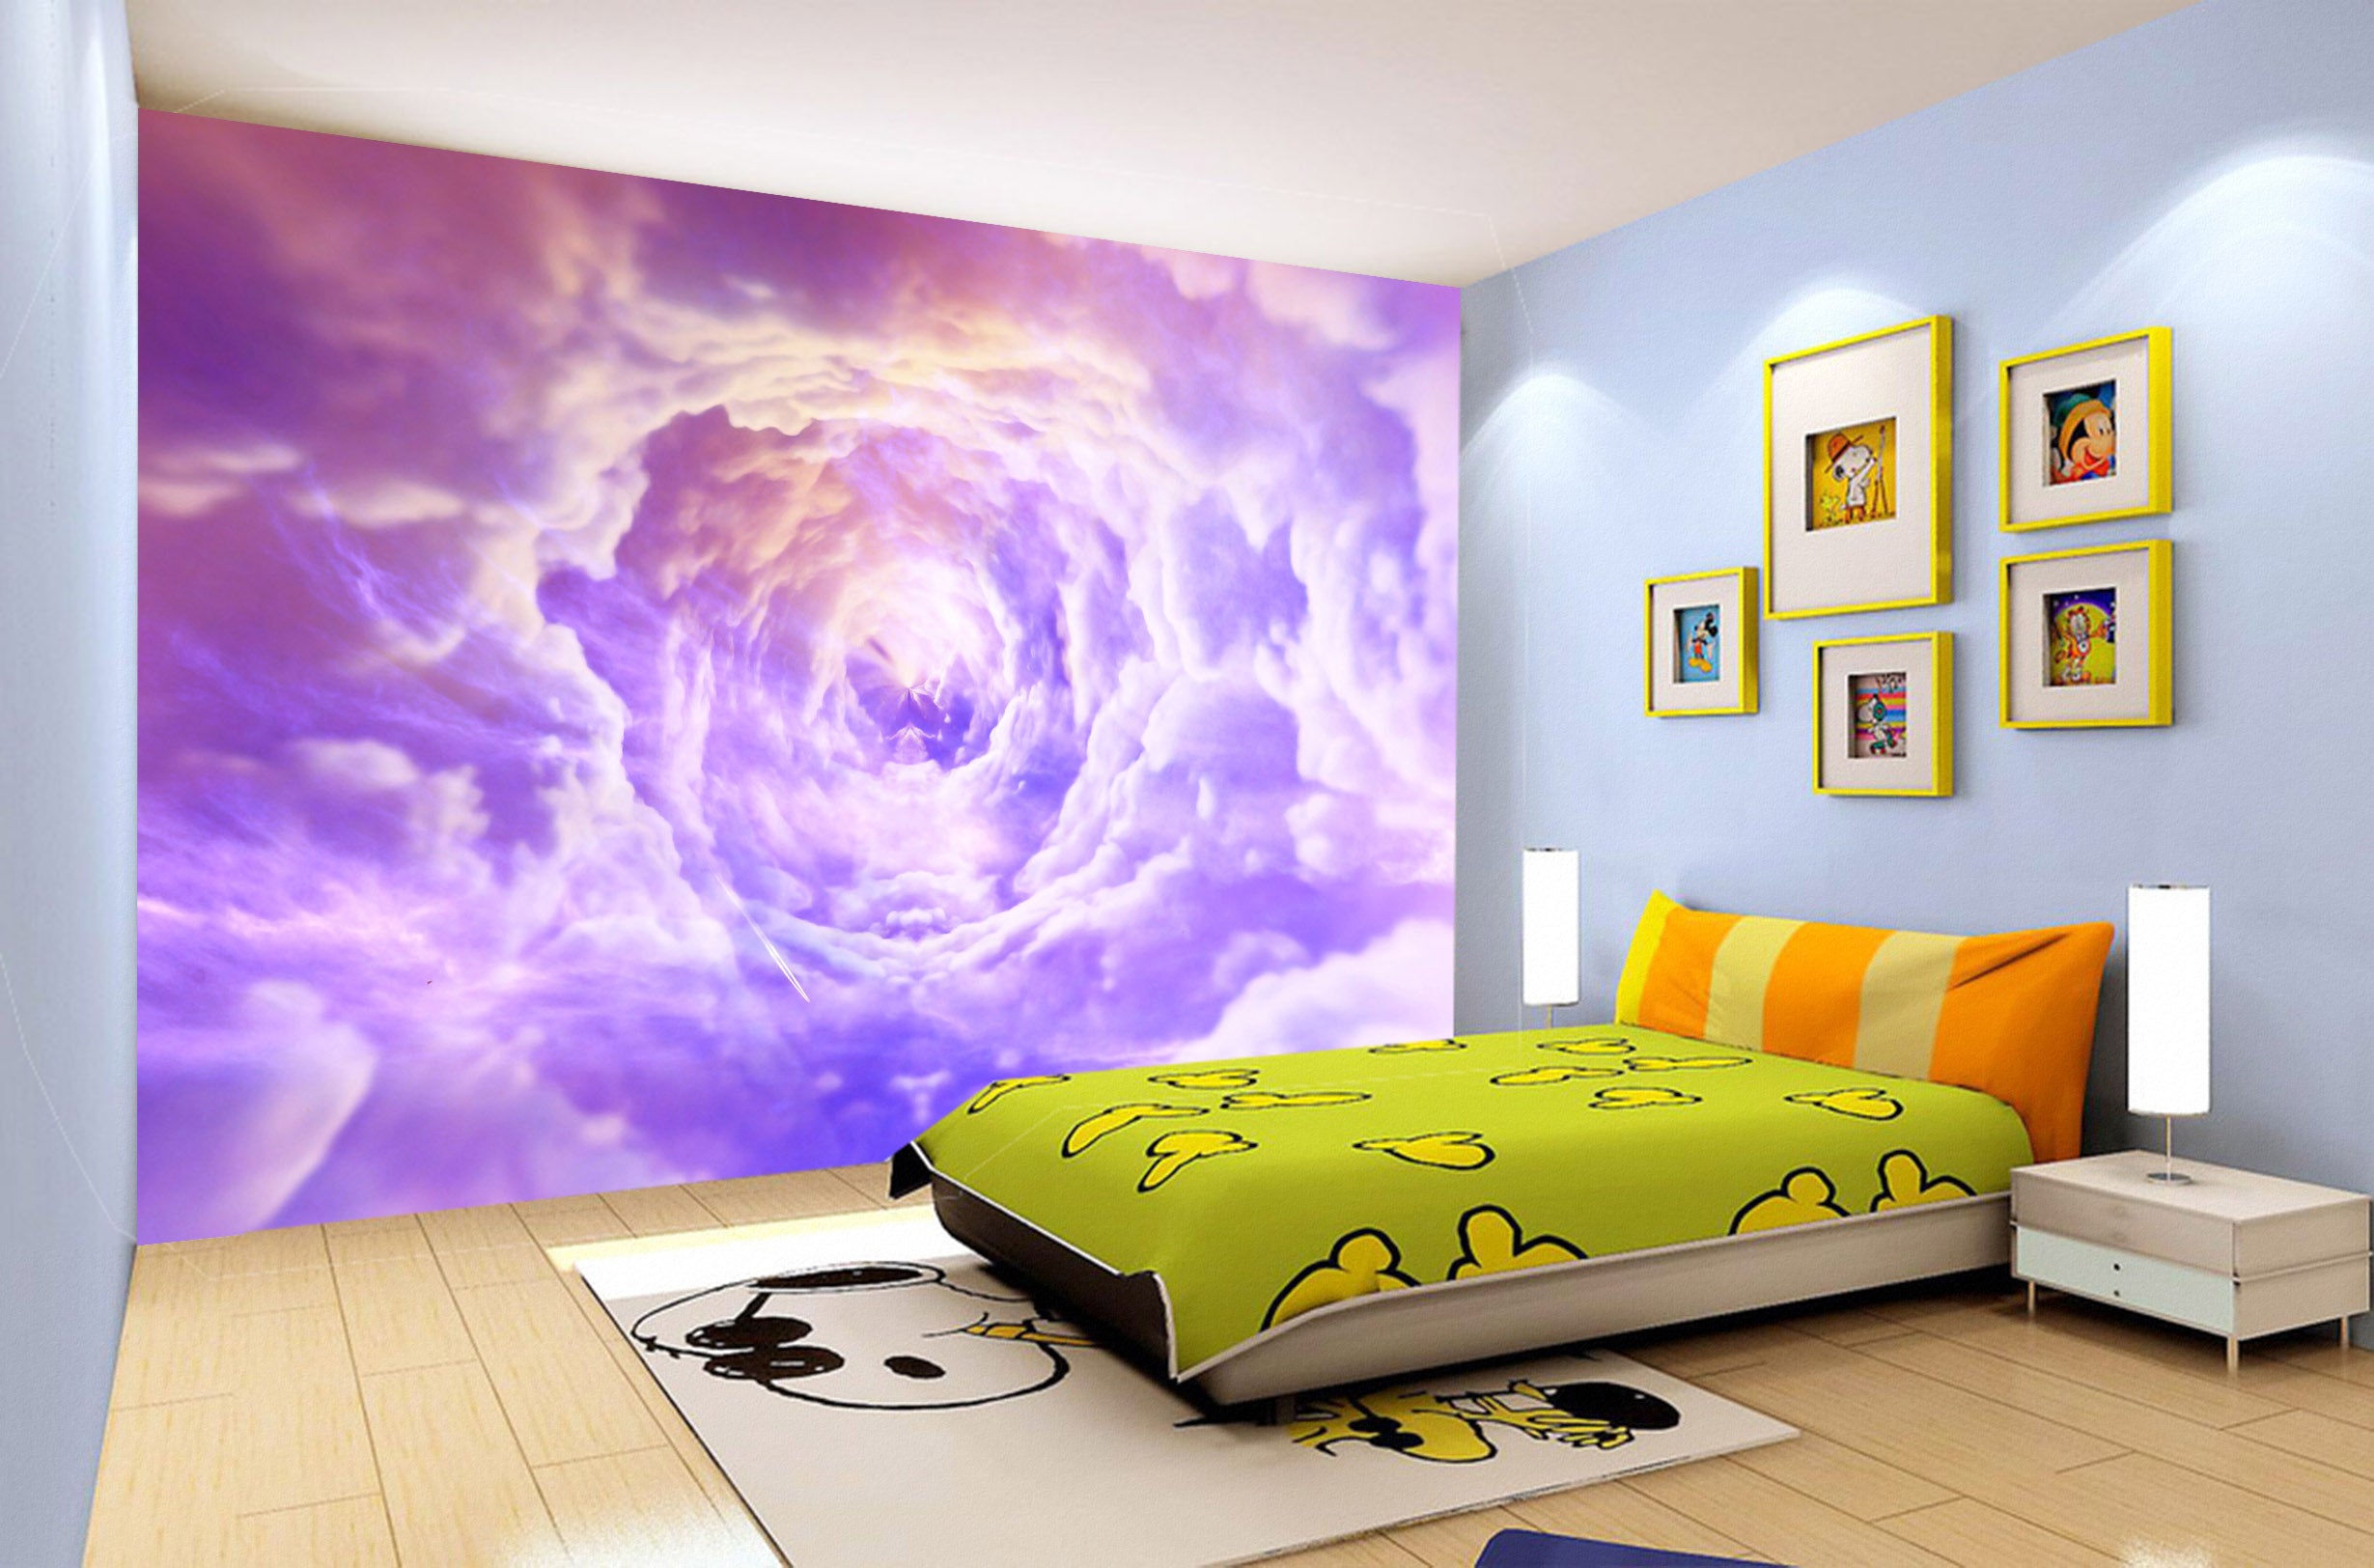 3D Purple Cloud 2040 Wall Mural Wall Murals